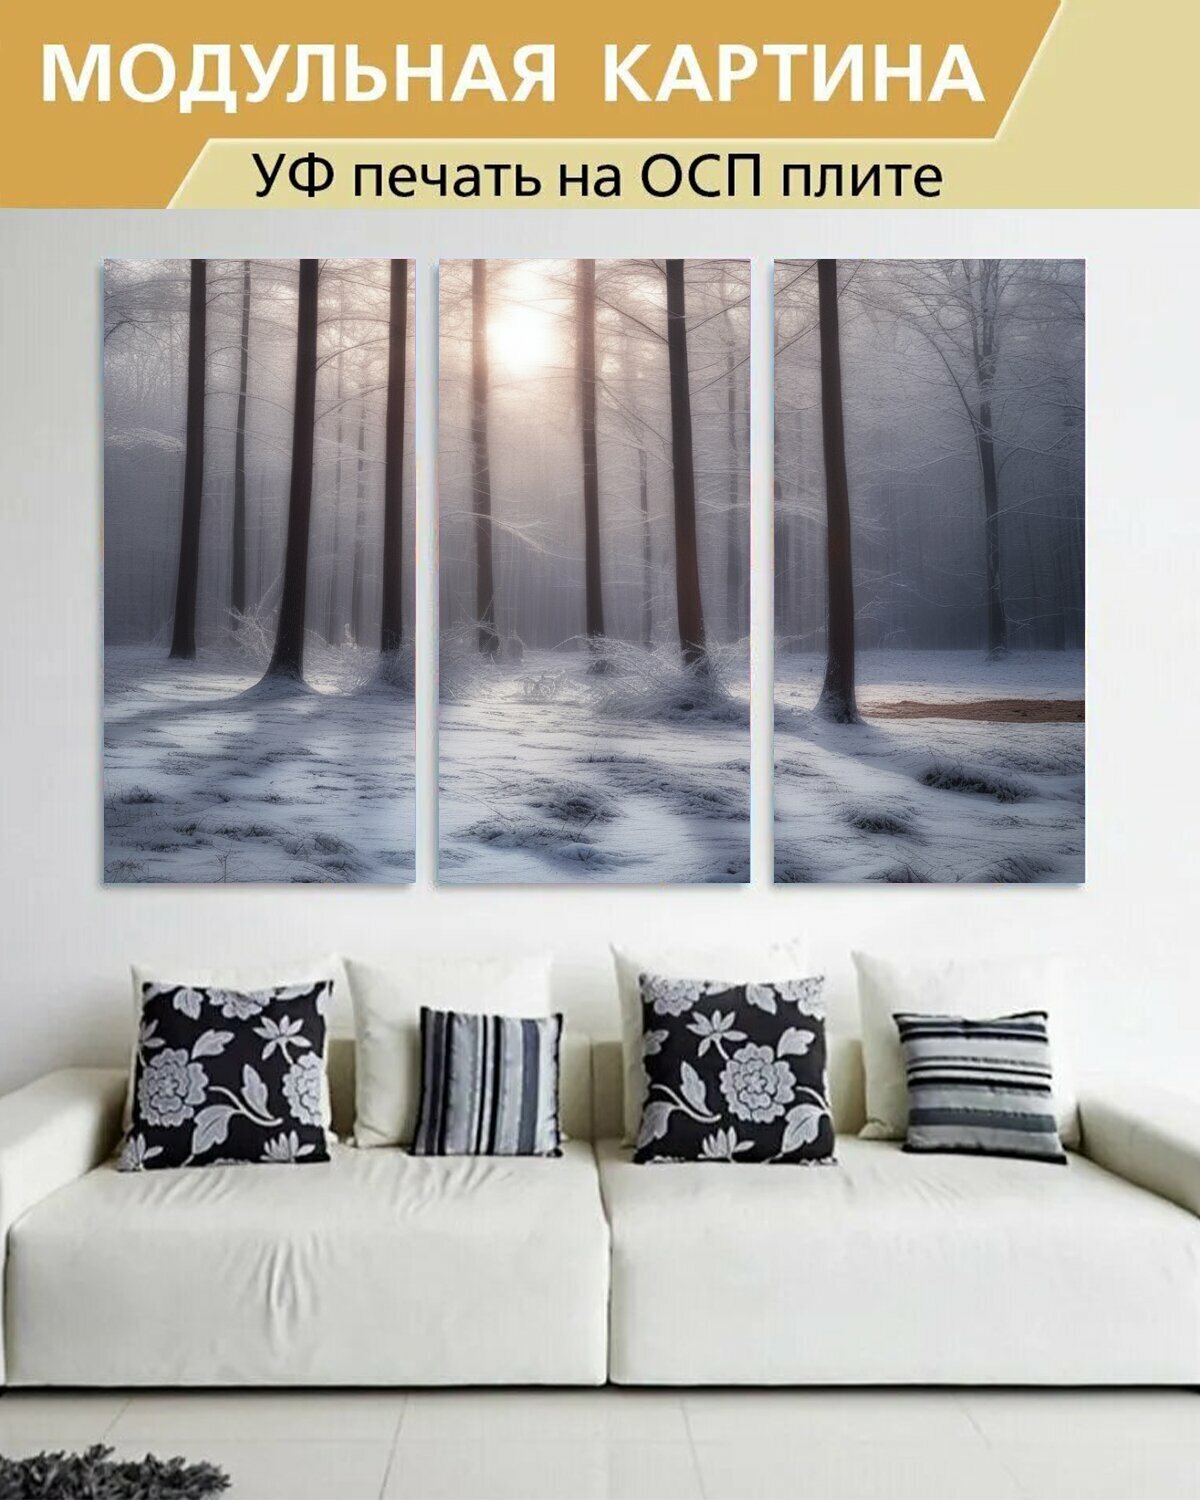 Модульная картина на ОСП любителям природы "Пейзажи, зима, в лесу" 188x125 см. 3 части для интерьера на стену